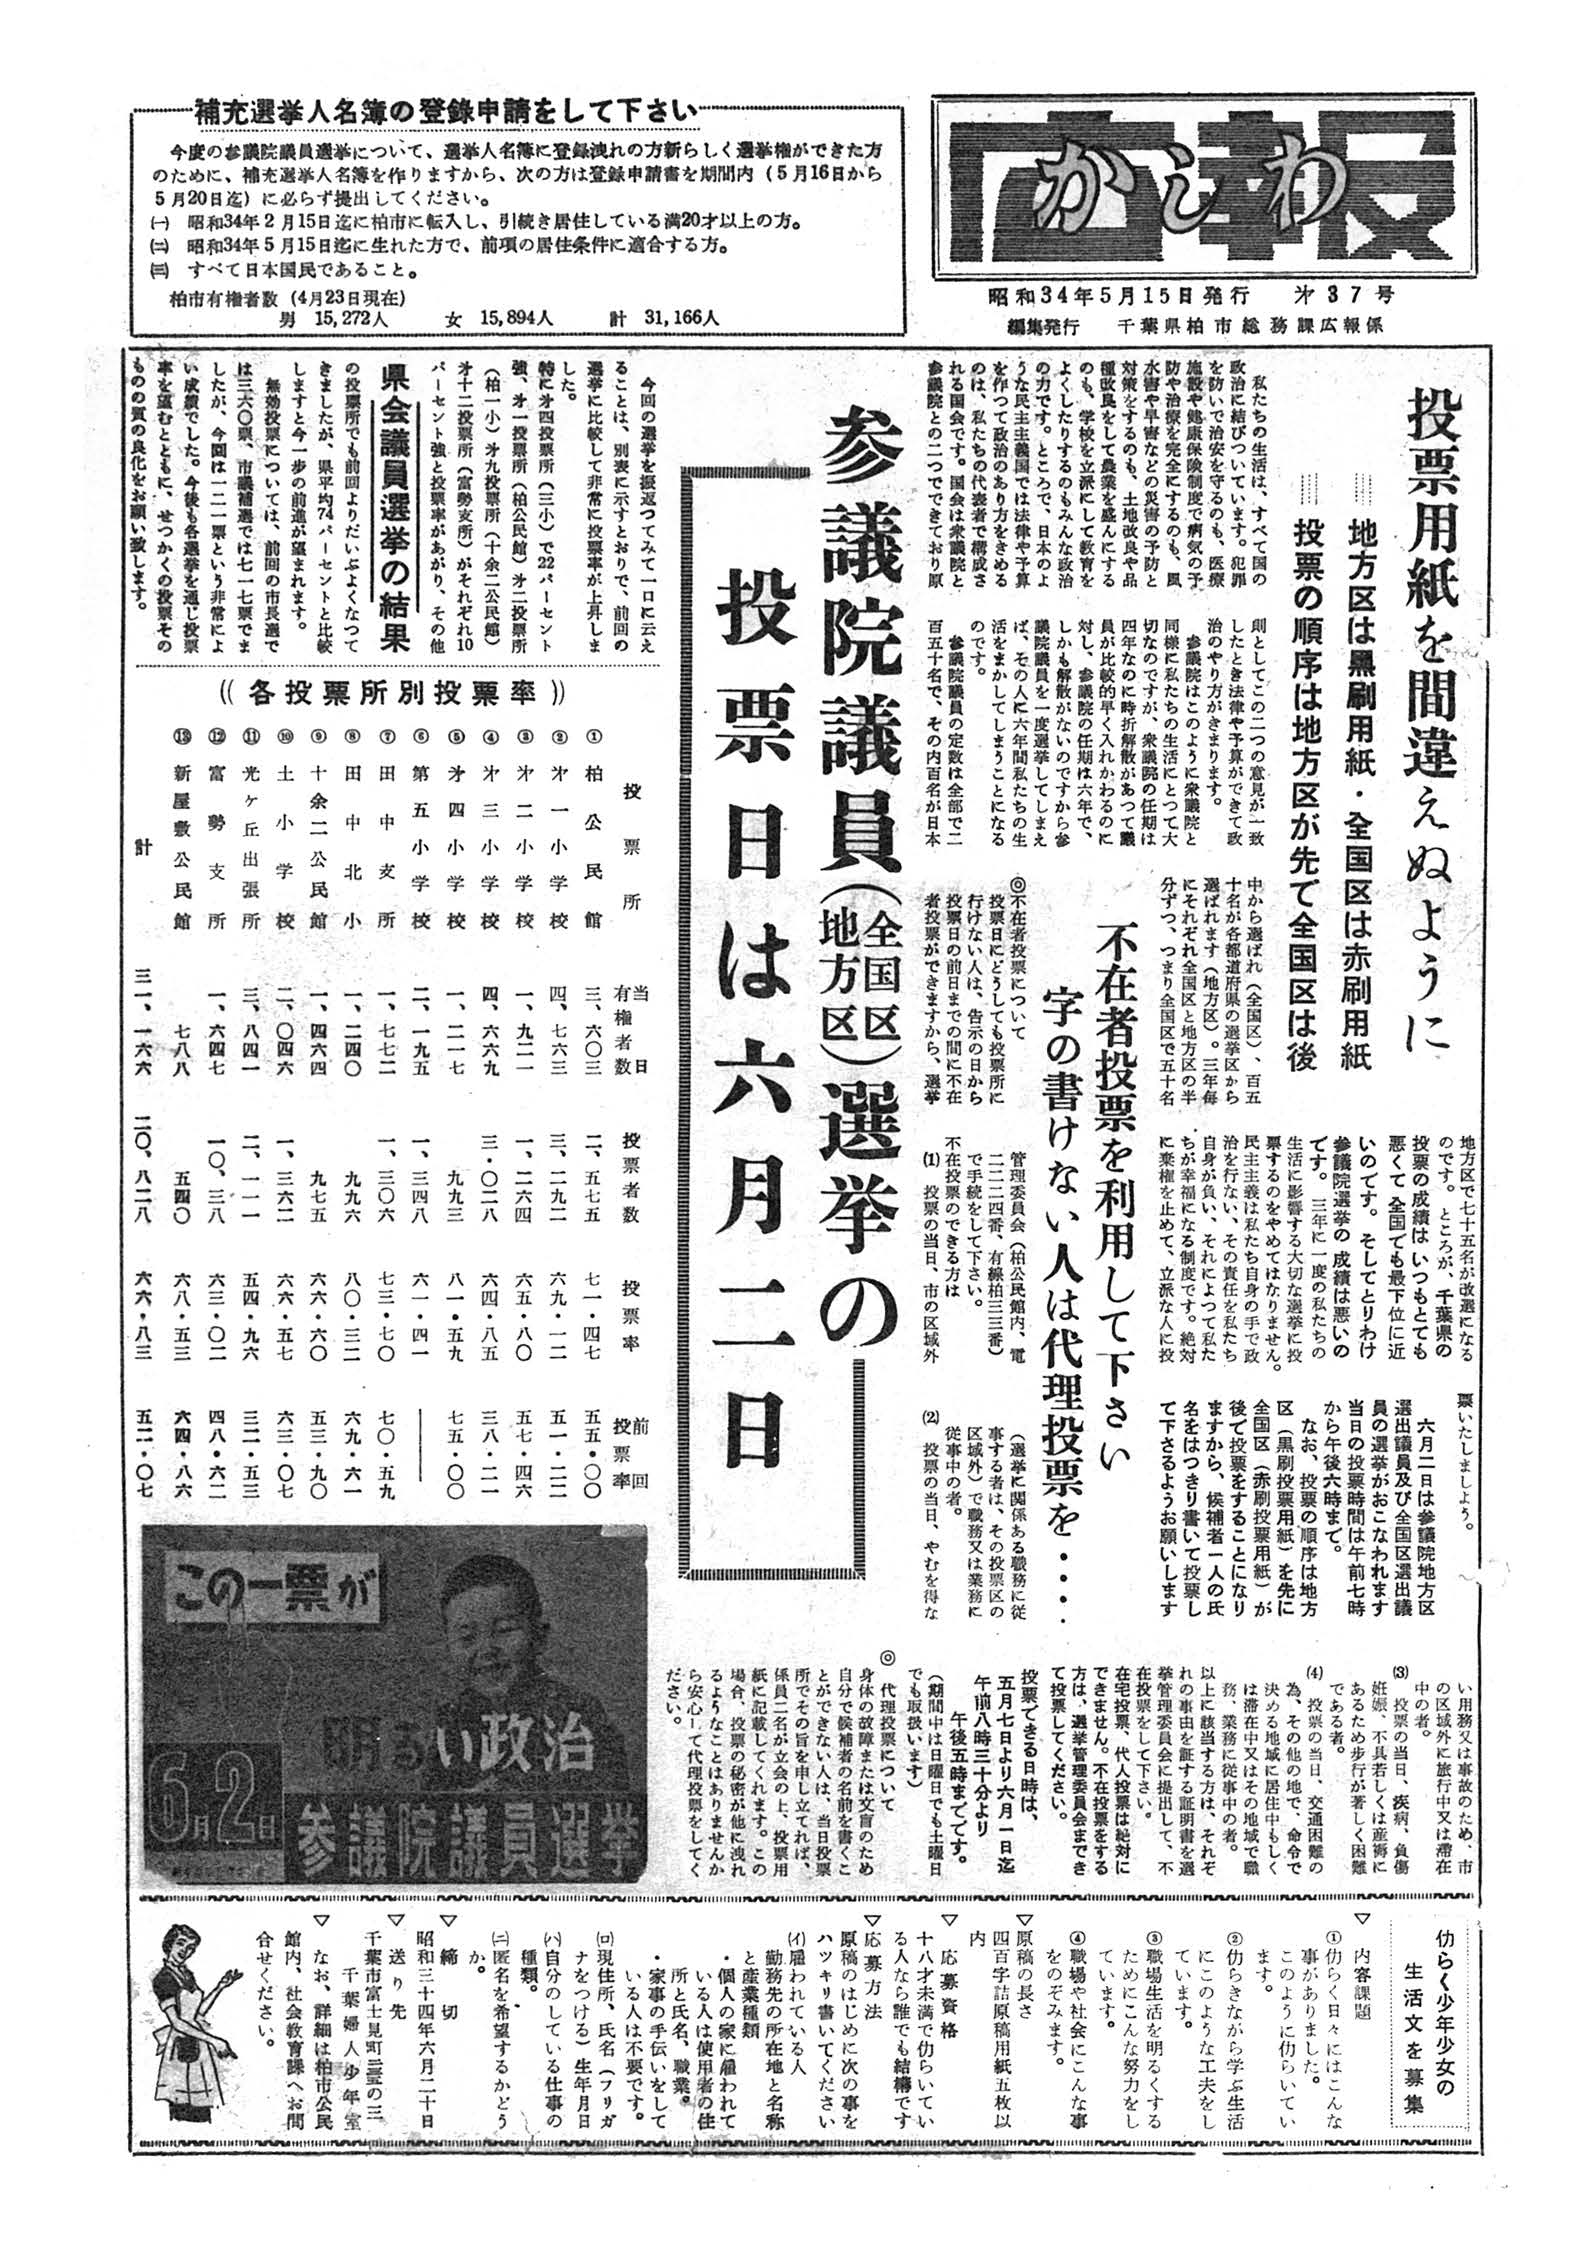 広報かしわ　昭和34年5月15日発行　37号